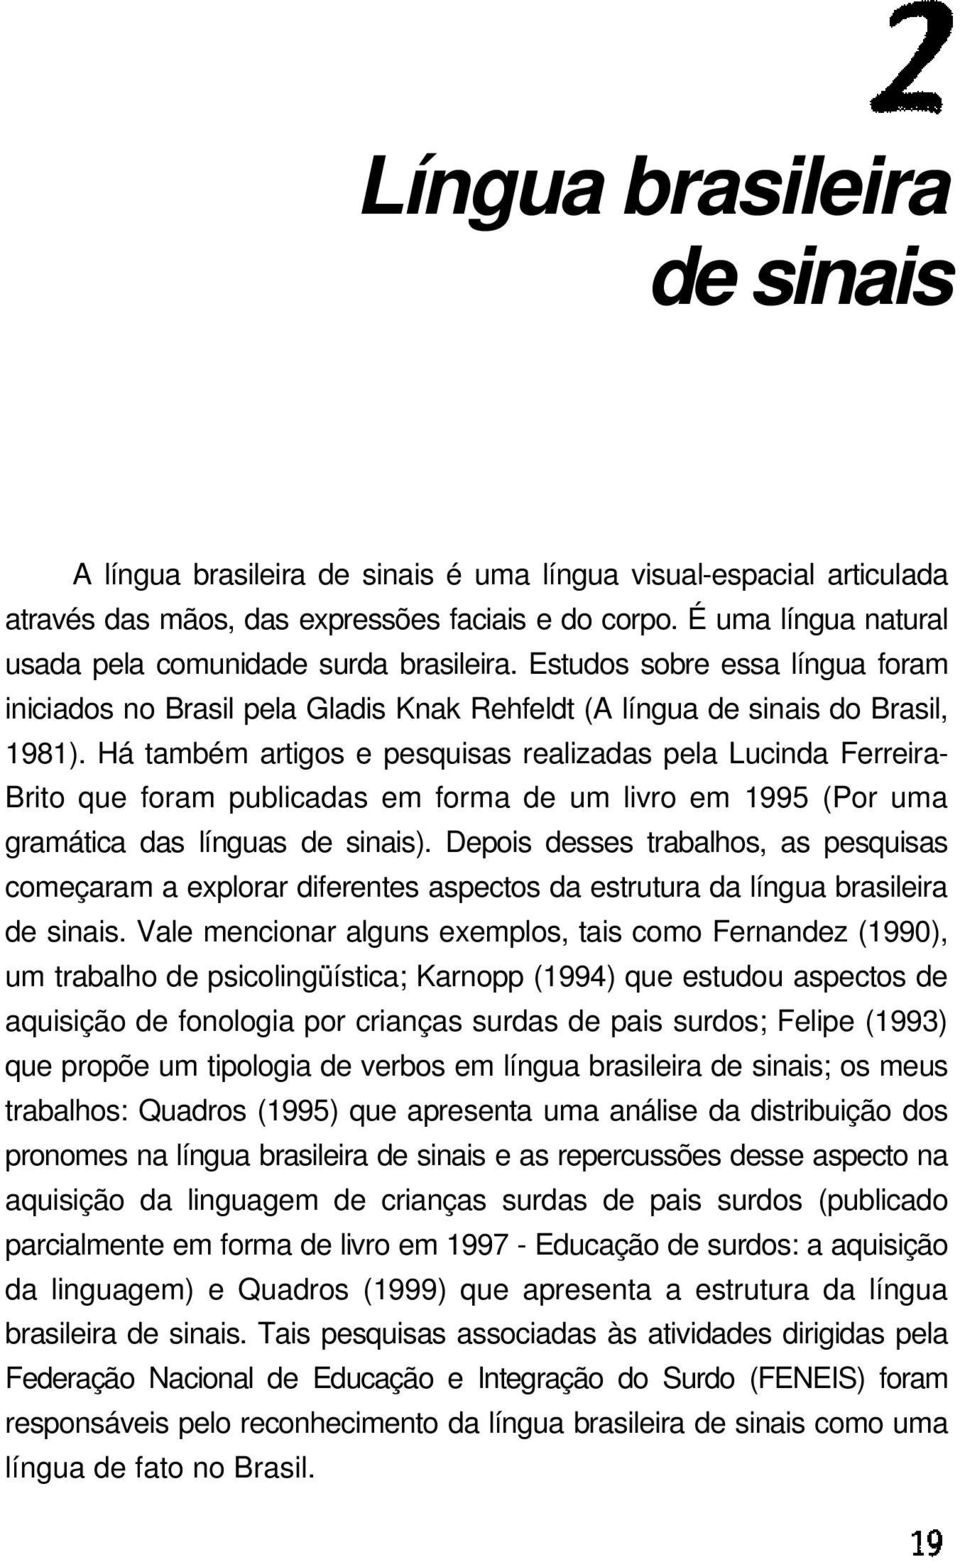 Há também artigos e pesquisas realizadas pela Lucinda Ferreira- Brito que foram publicadas em forma de um livro em 1995 (Por uma gramática das línguas de sinais).